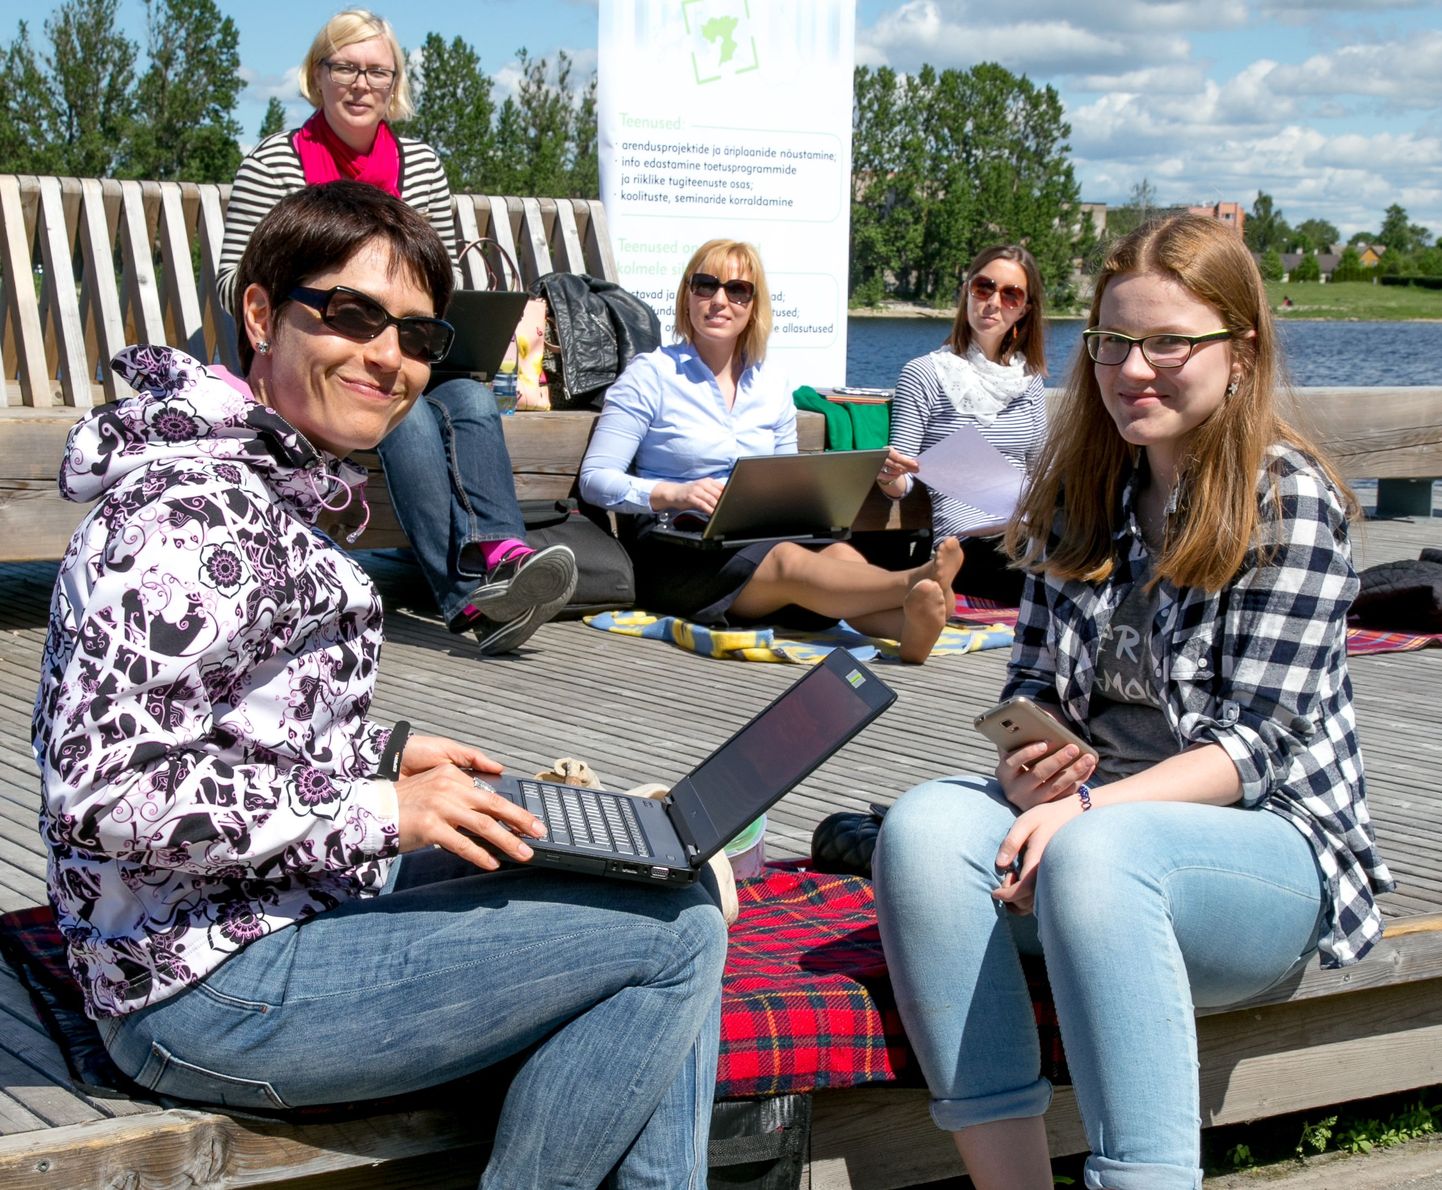 Pärnumaa ettevõtlus- ja arenduskeskus kolis väljas töötamise päeva puhul oma kontori Pärnu jõe äärde pargipingile.